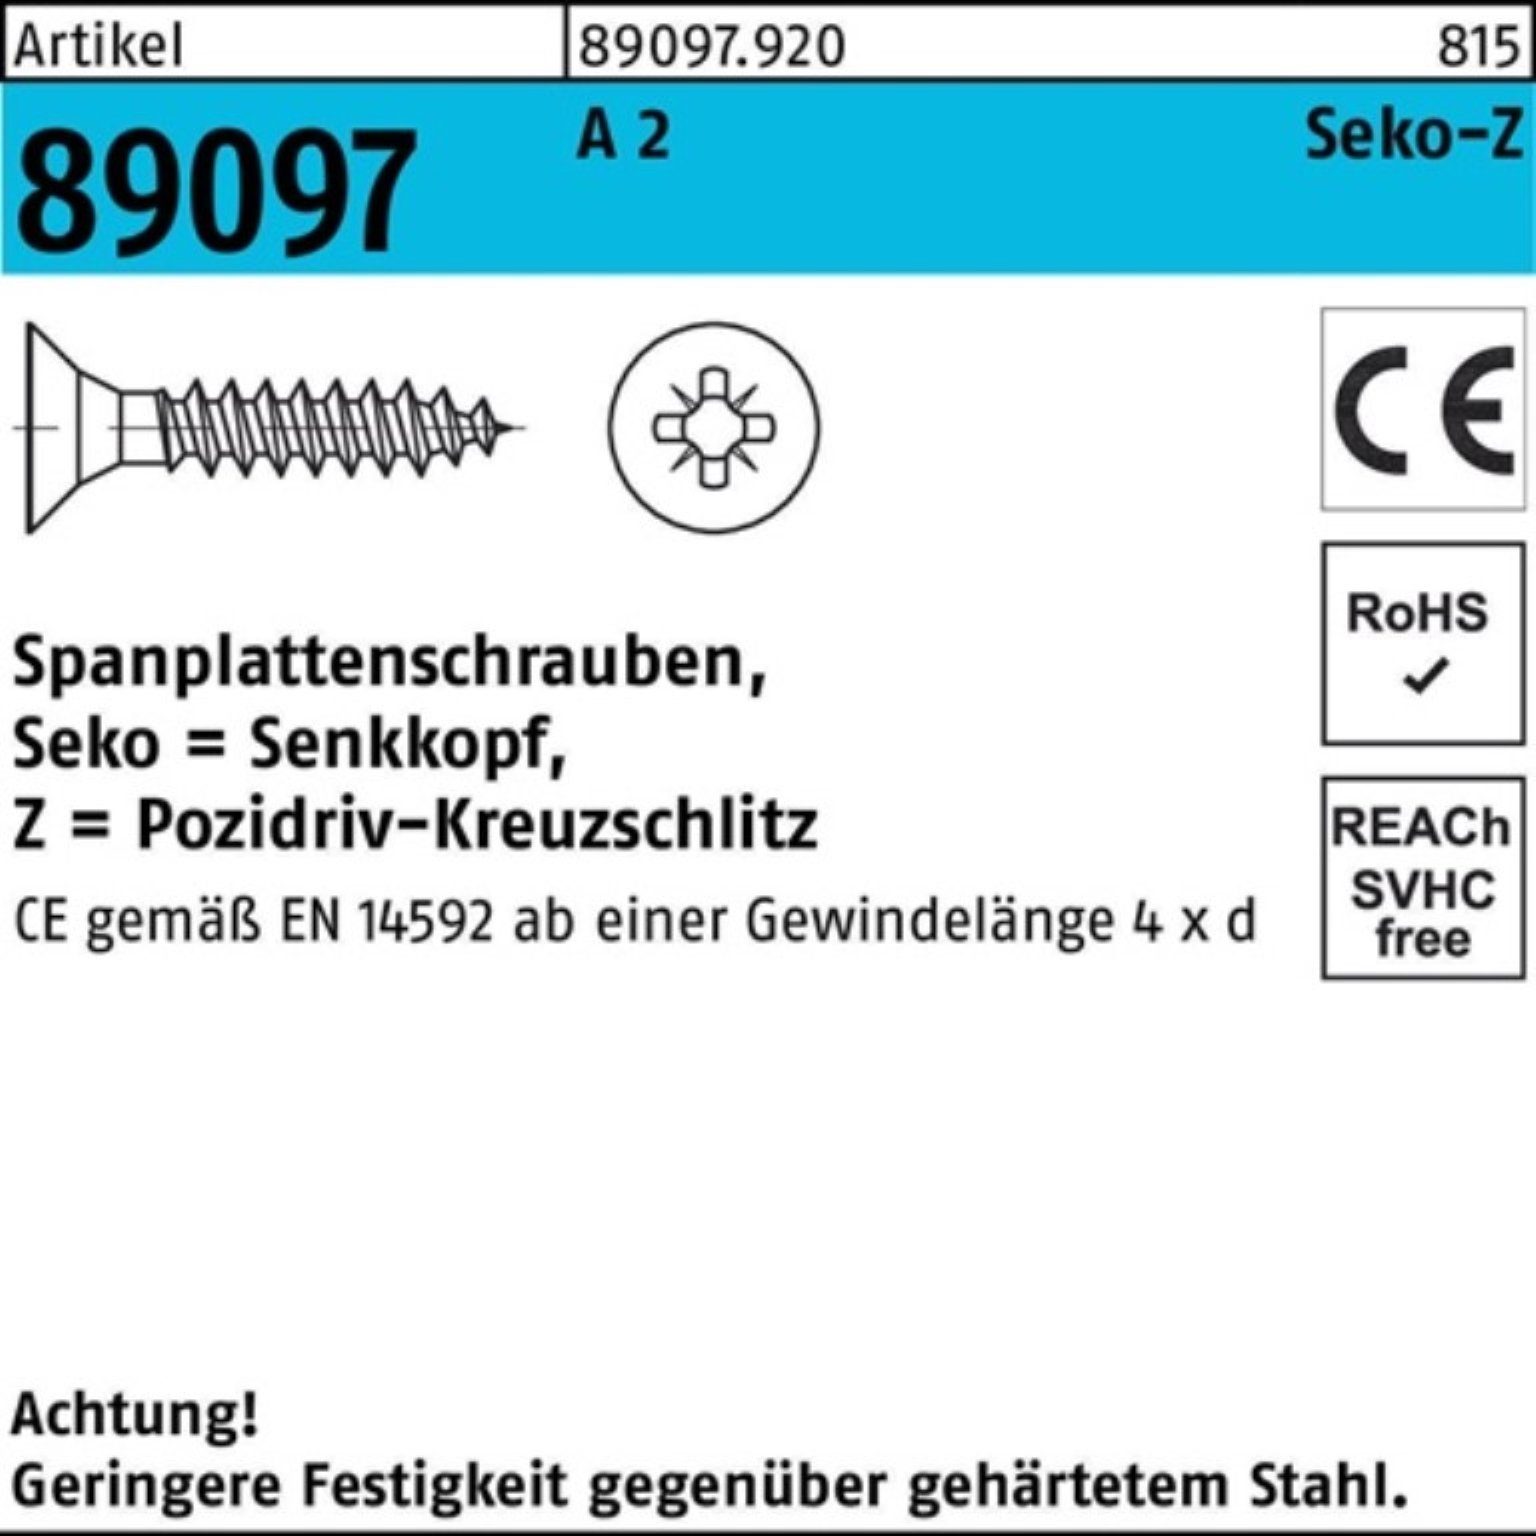 Reyher Spanplattenschraube 1000 Spanplattenschraube 89097 PZ R Pack 25-Z VG 1000er 2 3x A SEKO St